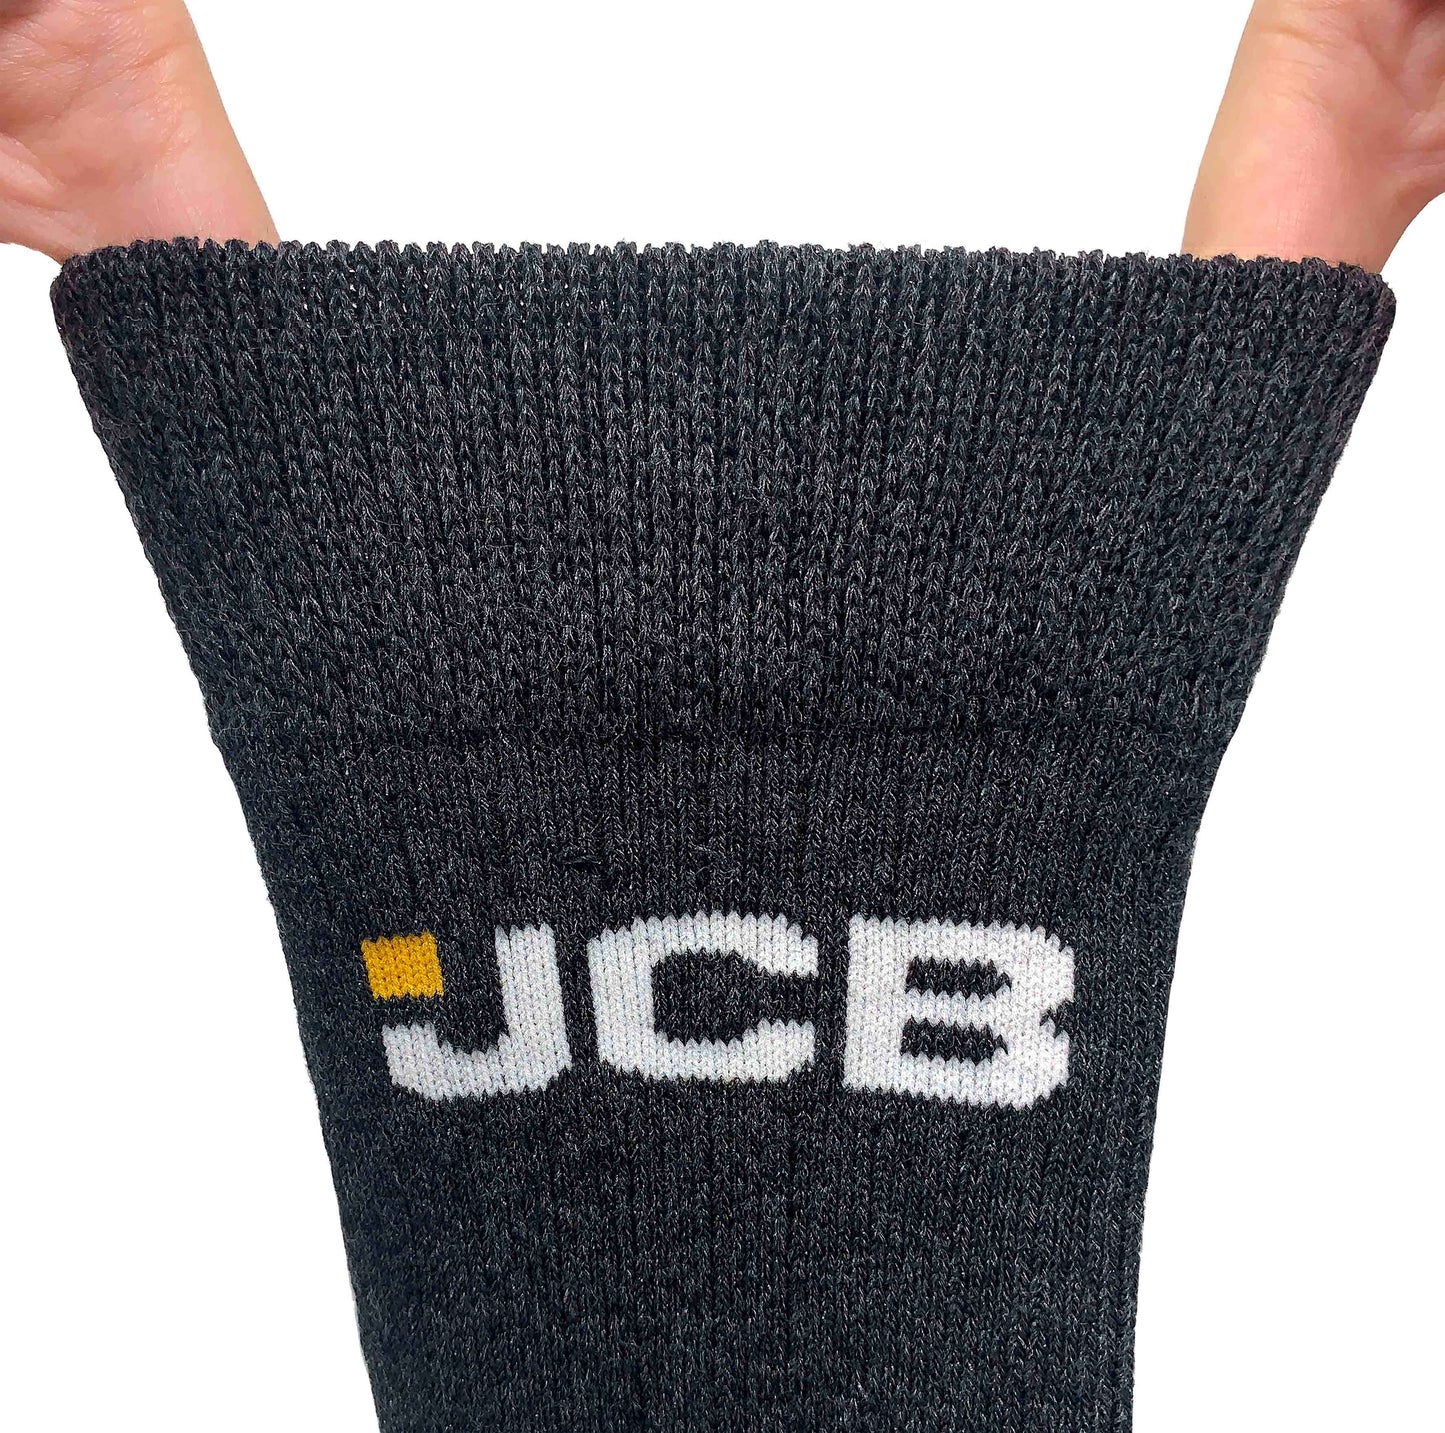 JCB Boots Socks Pack of 3